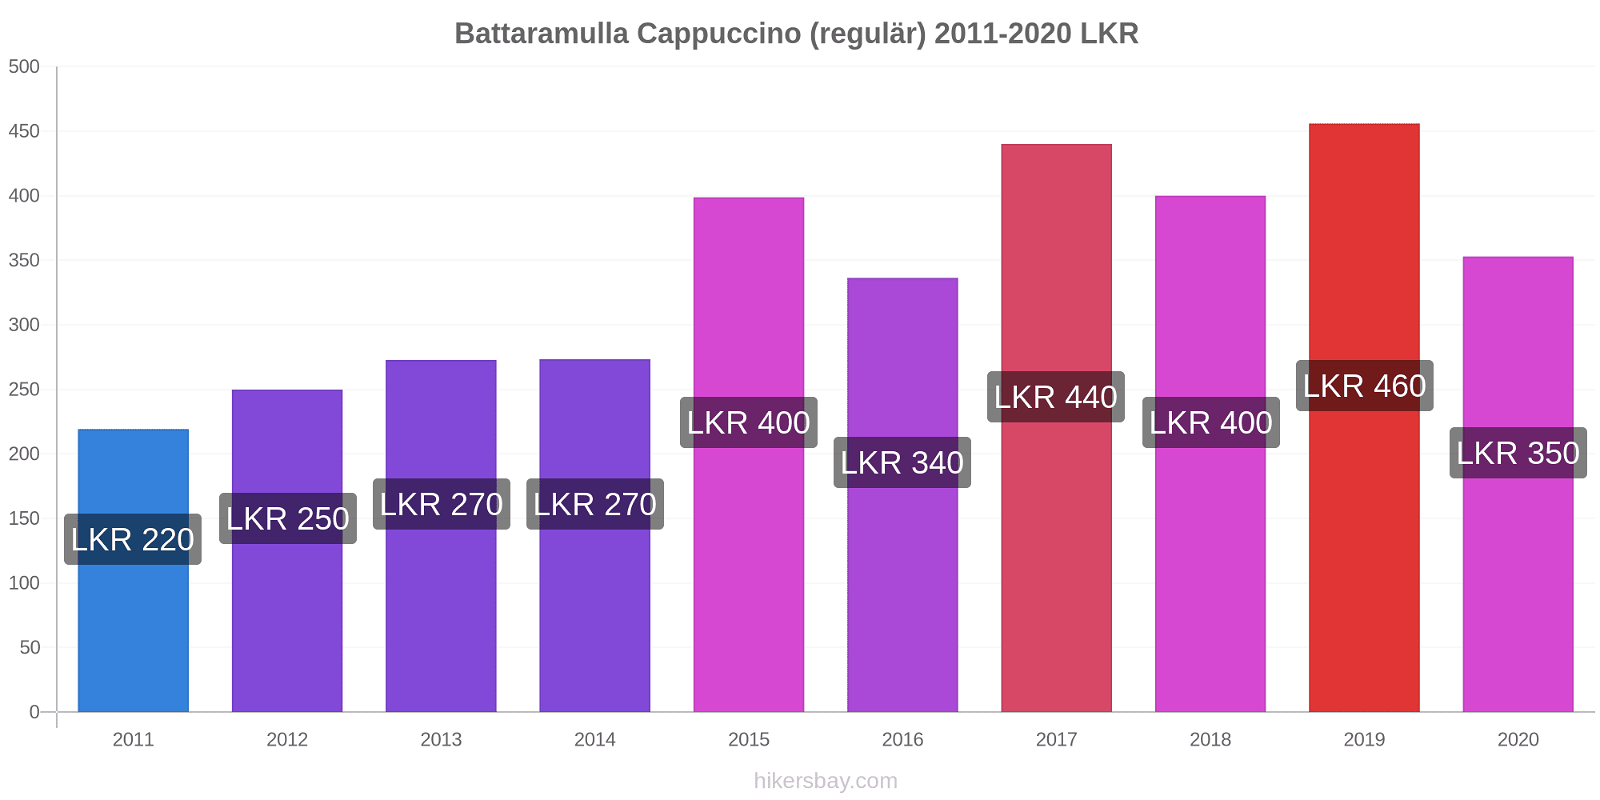 Battaramulla Preisänderungen Cappuccino (regulär) hikersbay.com